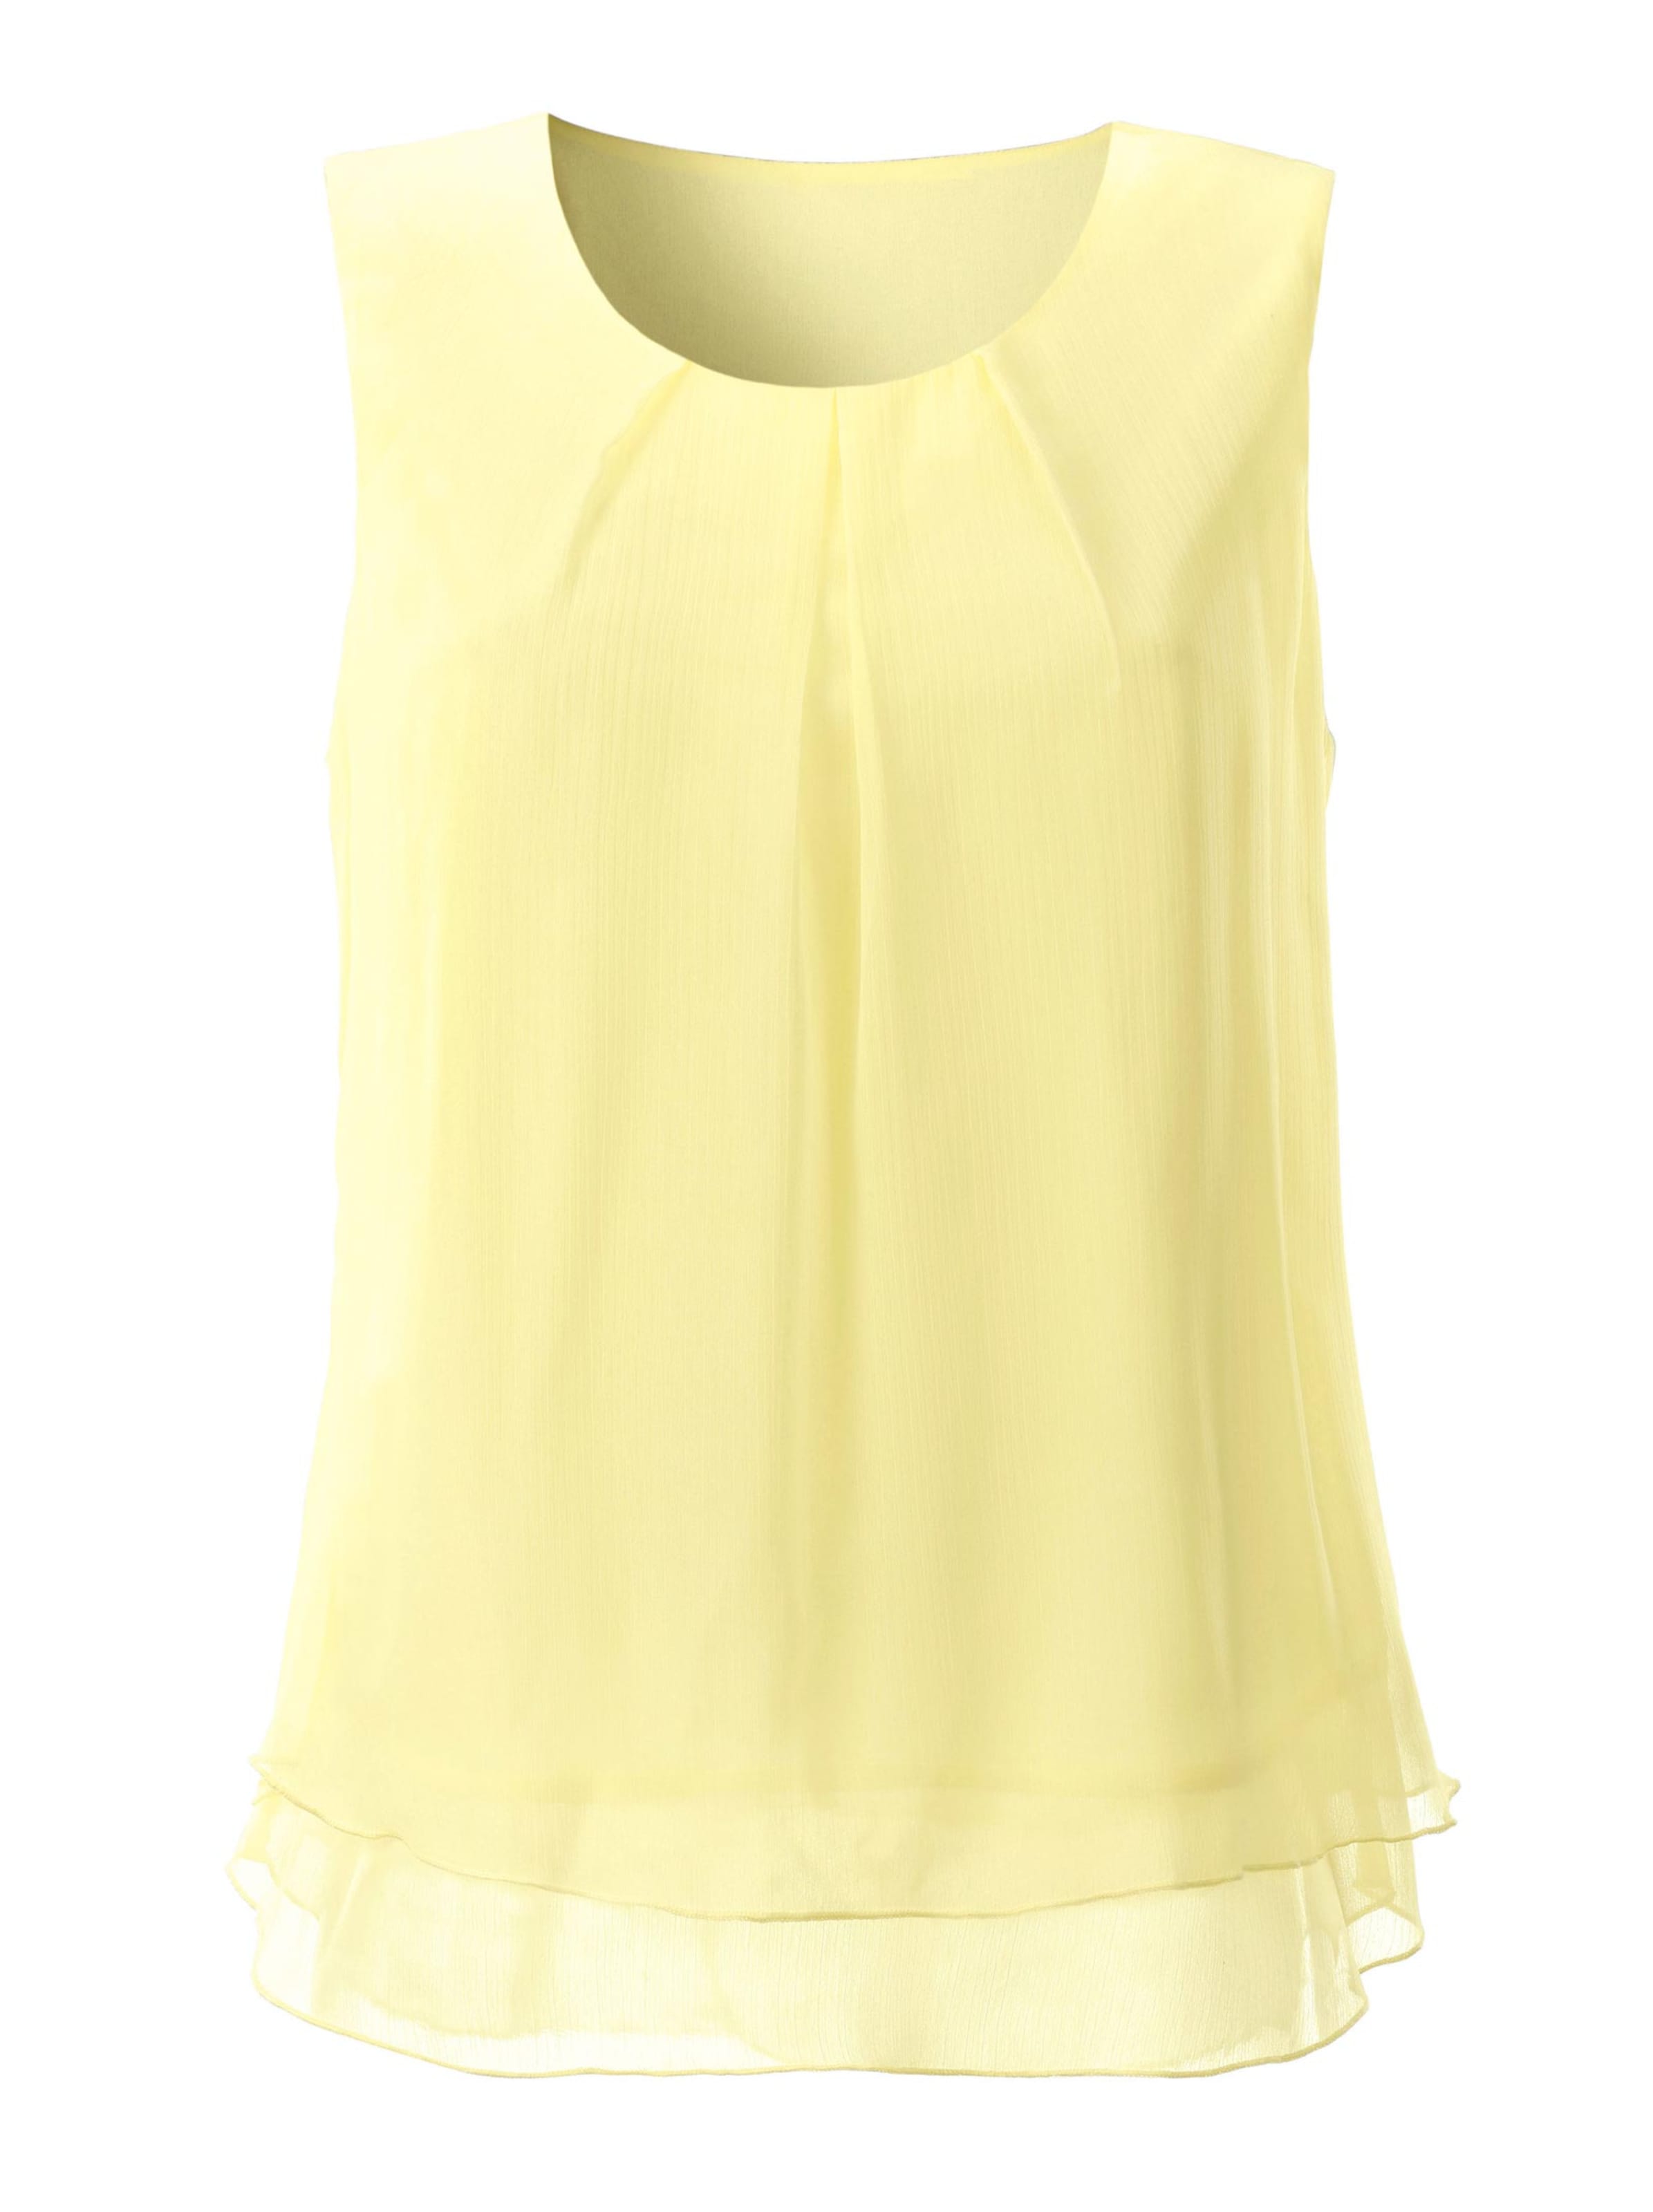 Damenmode Shirts Blusentop in limone 